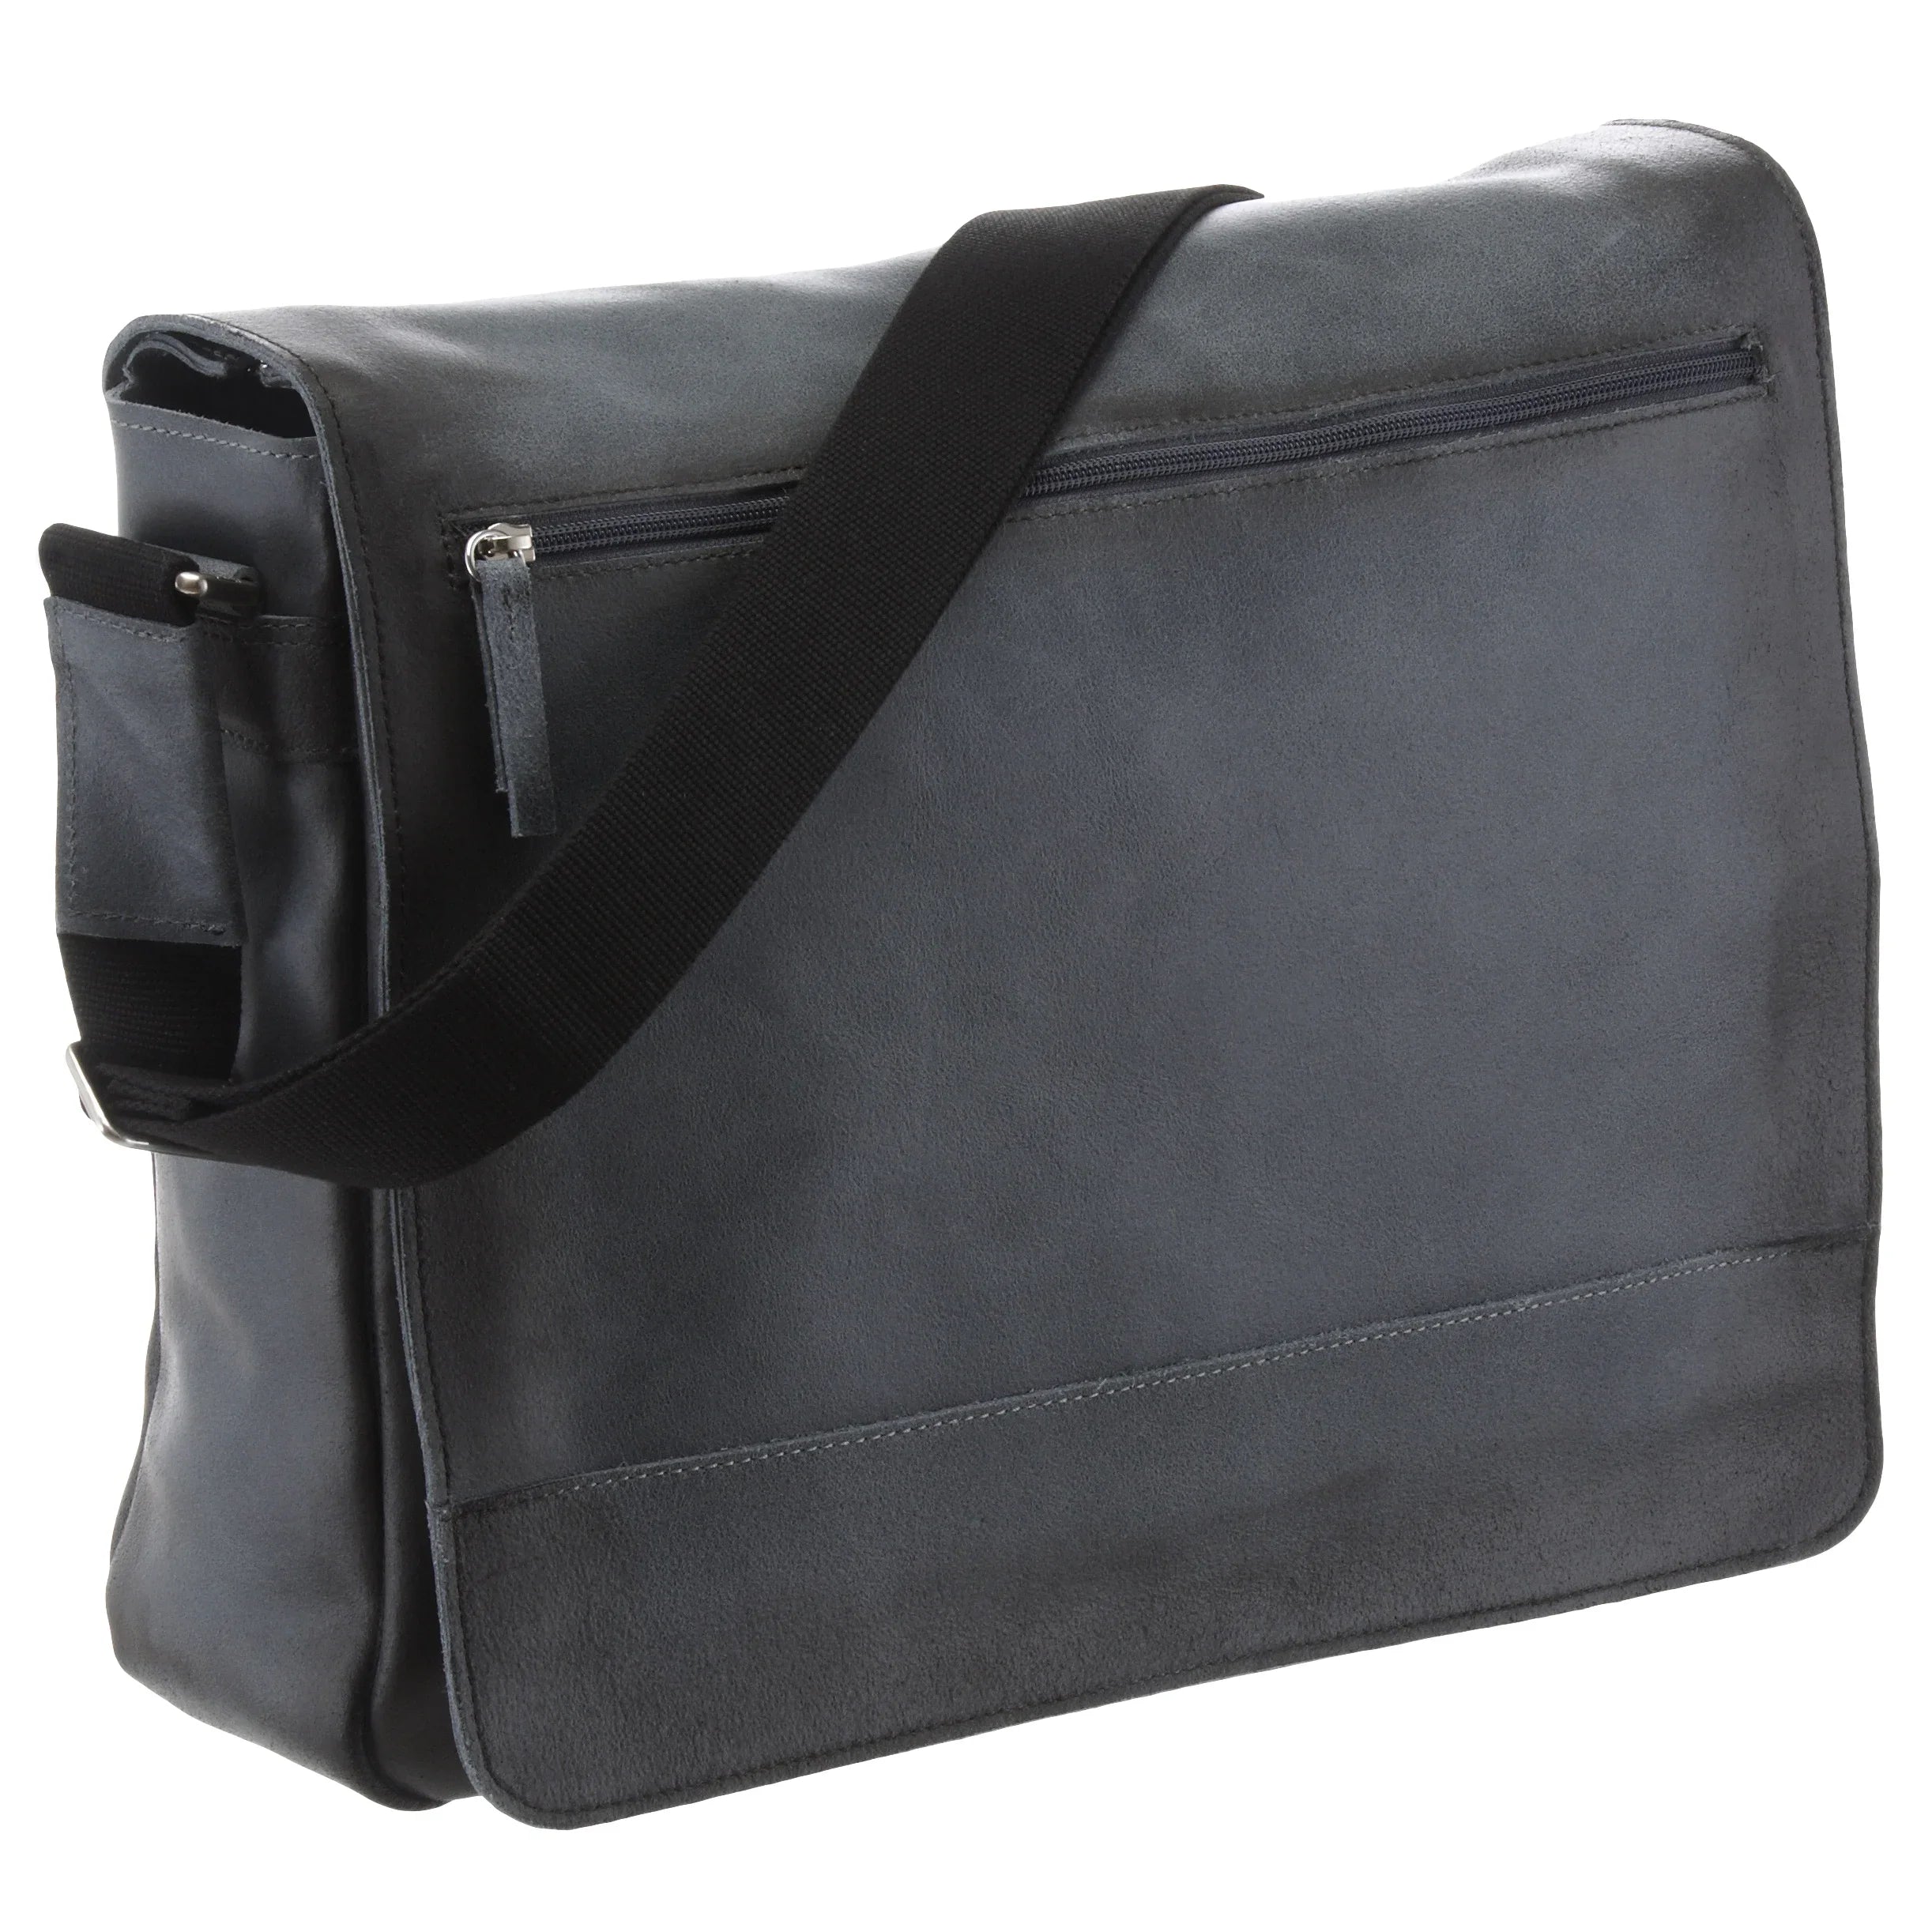 Jost Narvik shoulder bag with laptop compartment 38 cm - black